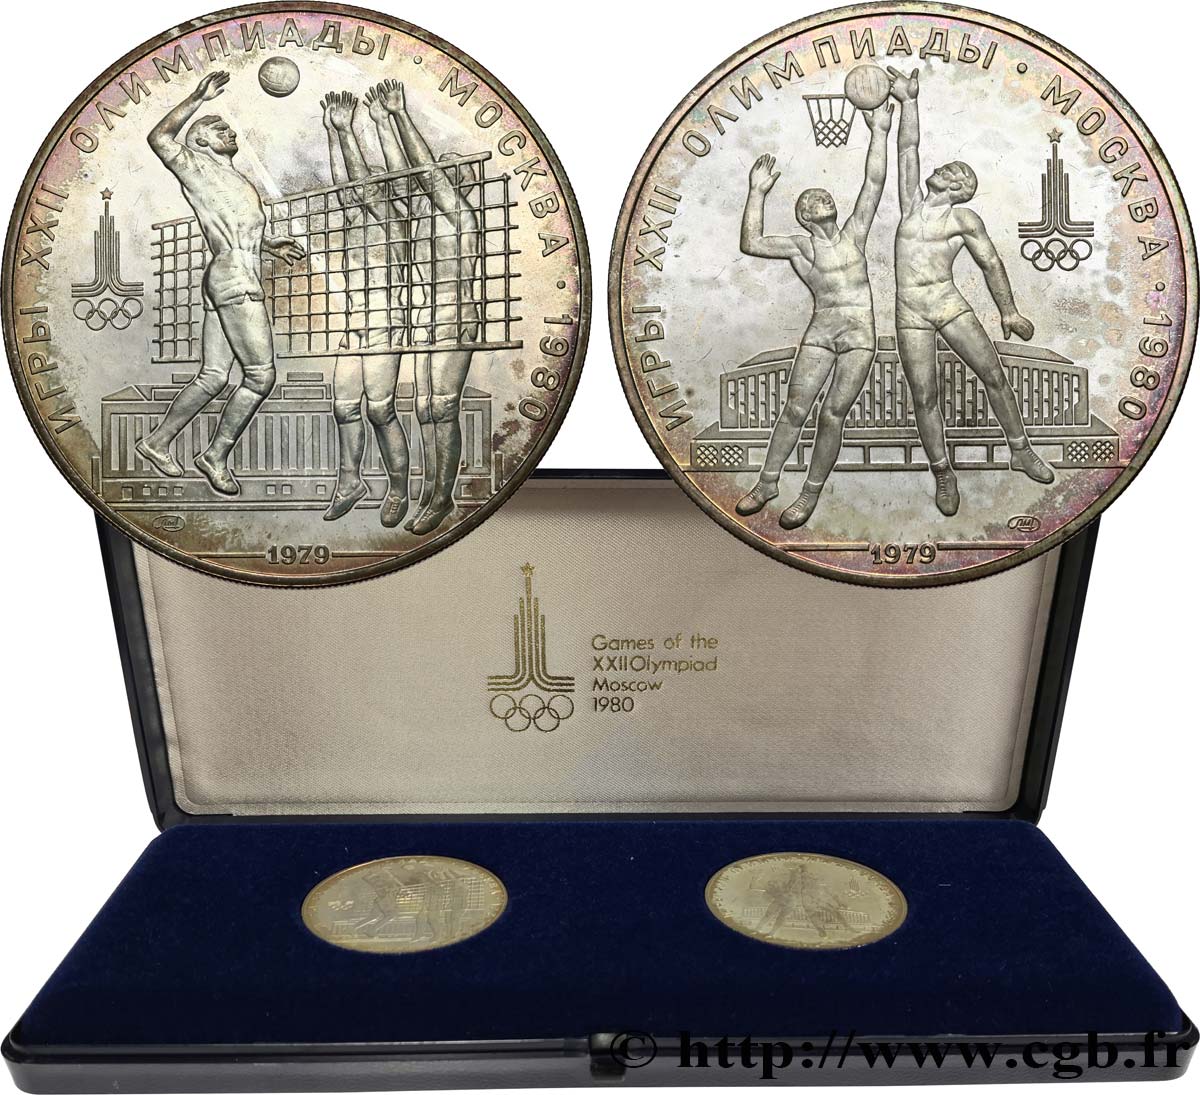 RUSSIA - URSS Série 2 monnaies Jeux Olympiques de Moscou 1980 1979 Moscou MS 